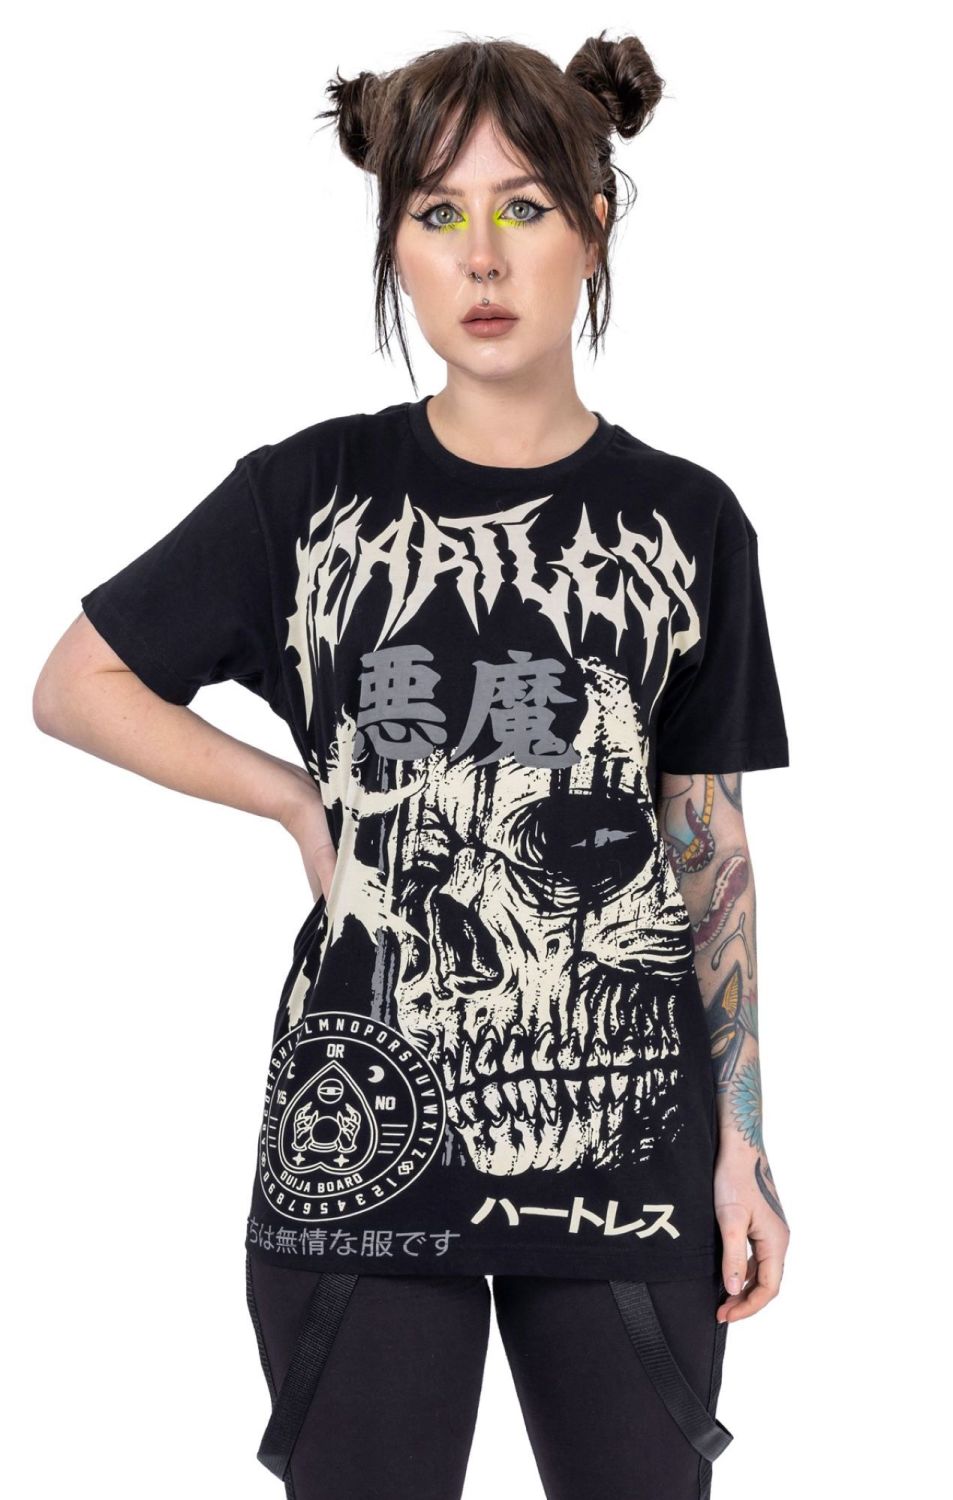 Heartless Reaper T-shirt RRP £19.99